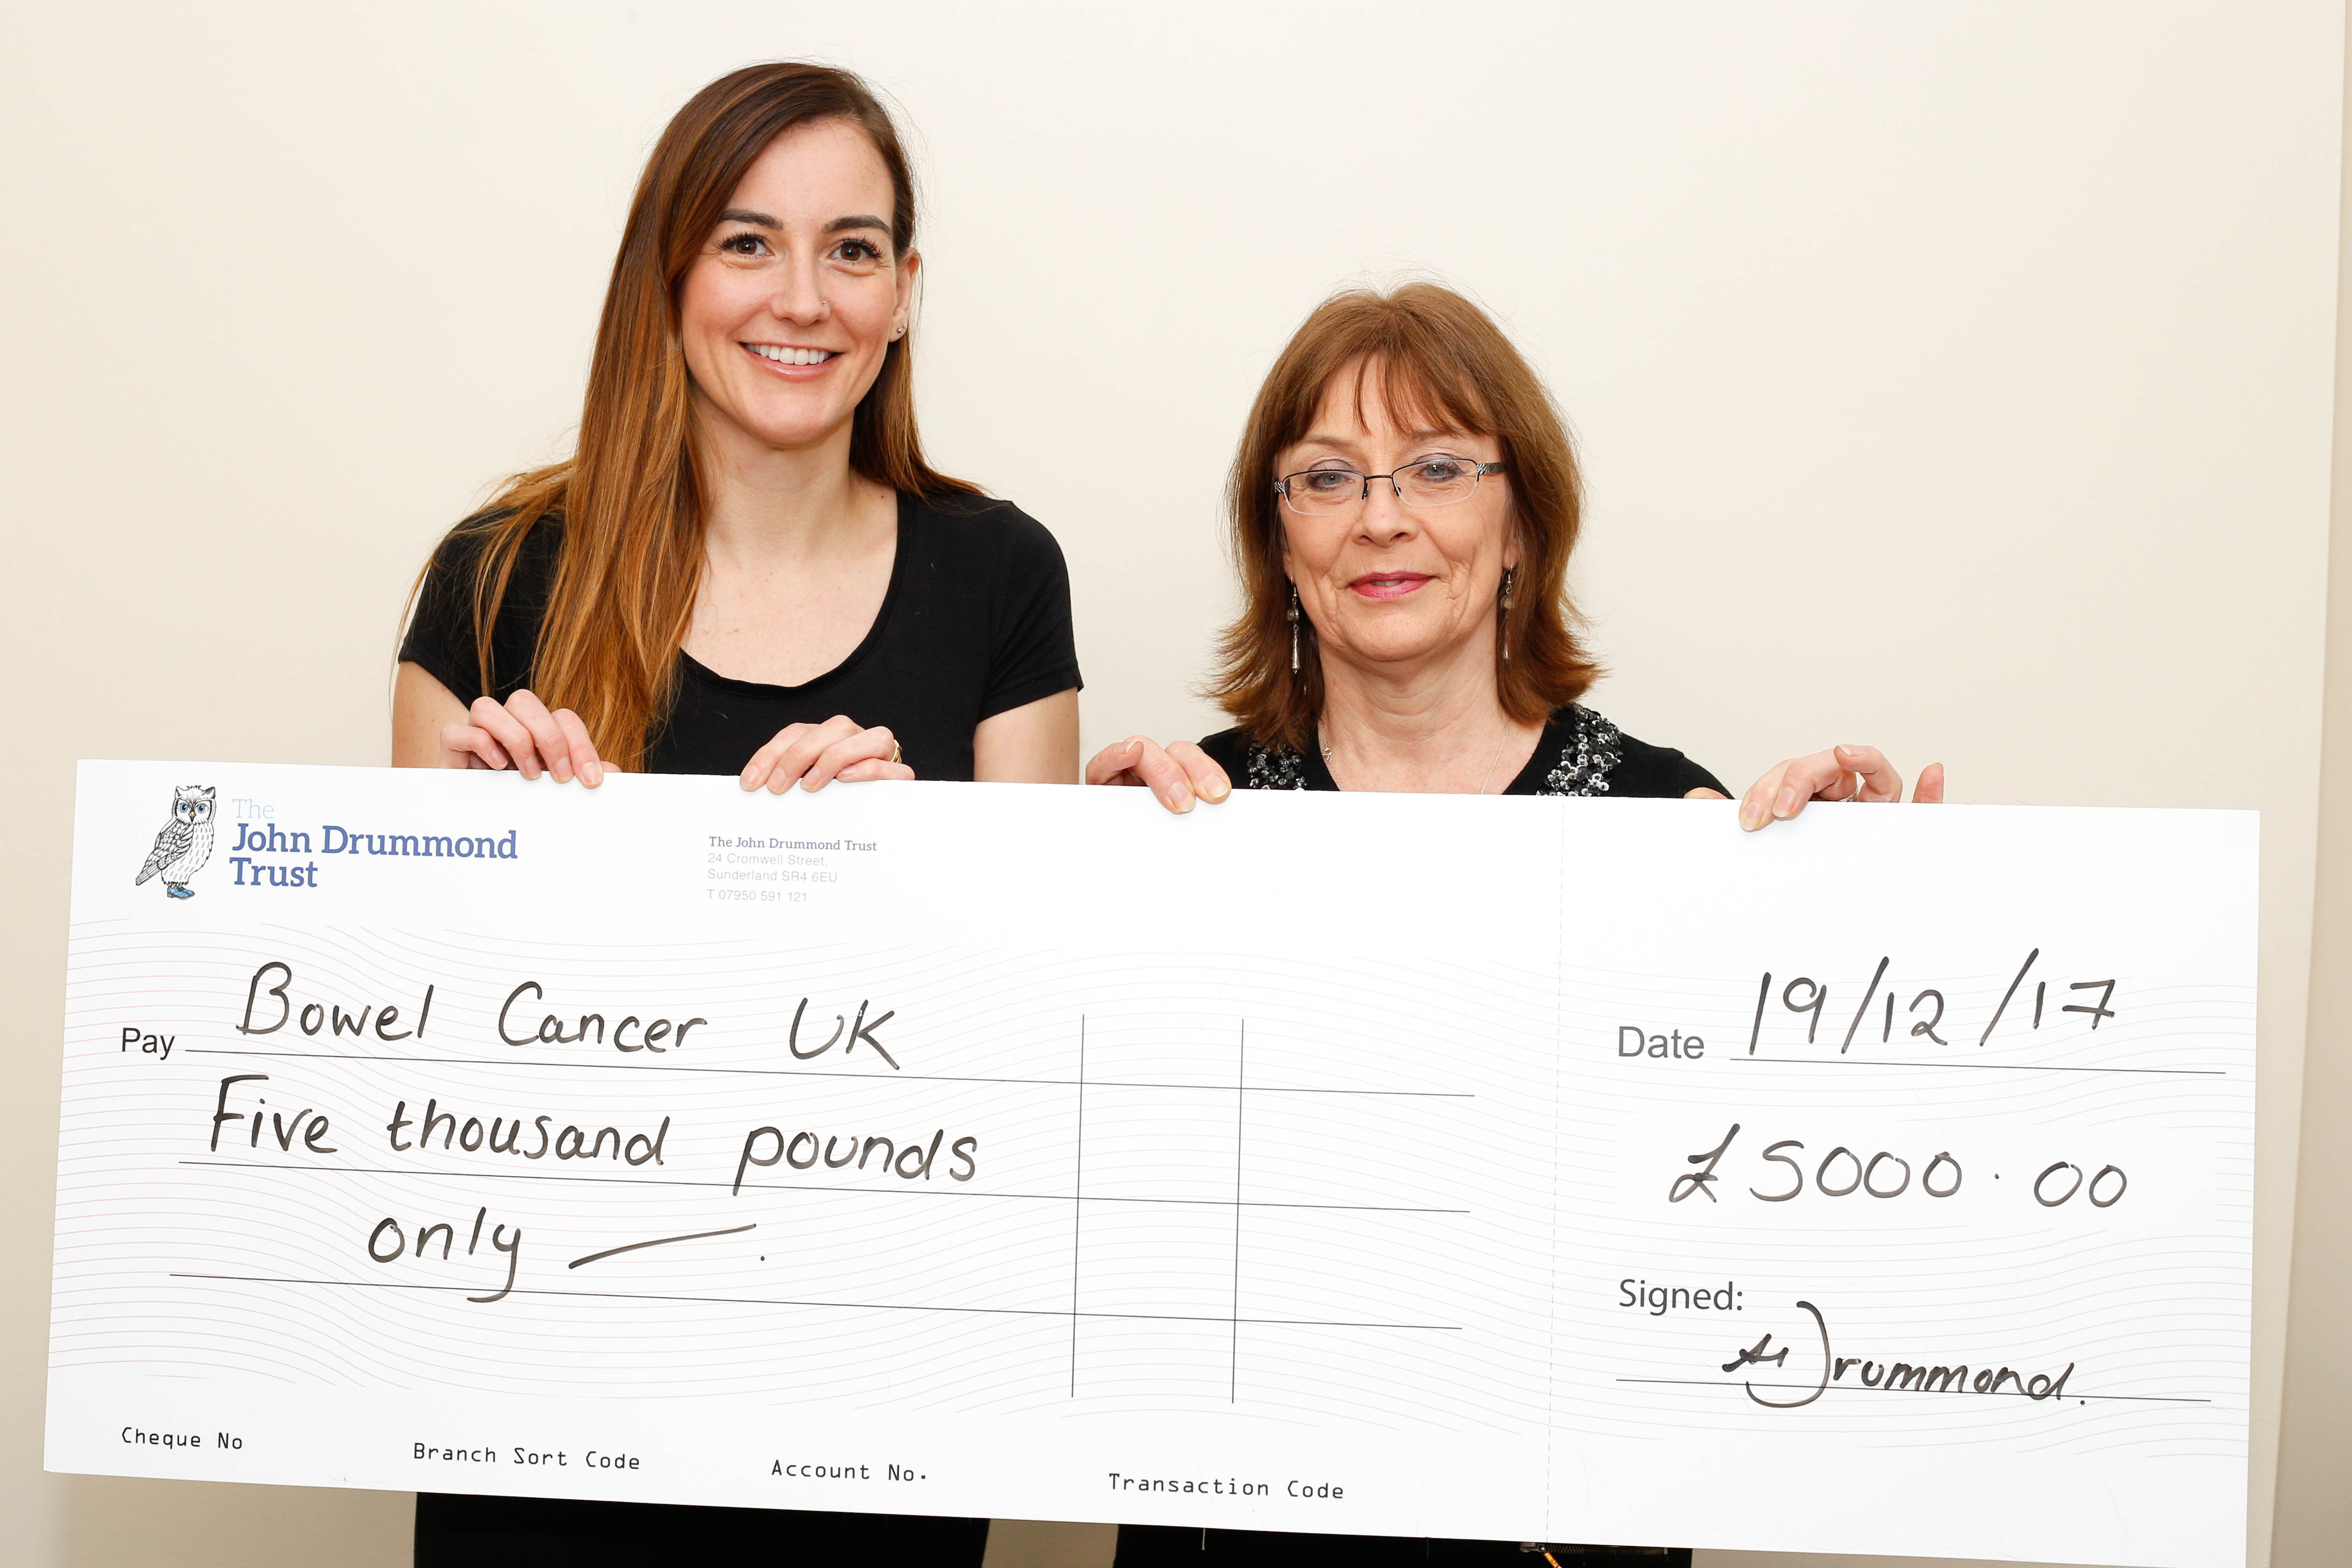 donation to bowel cancer uk